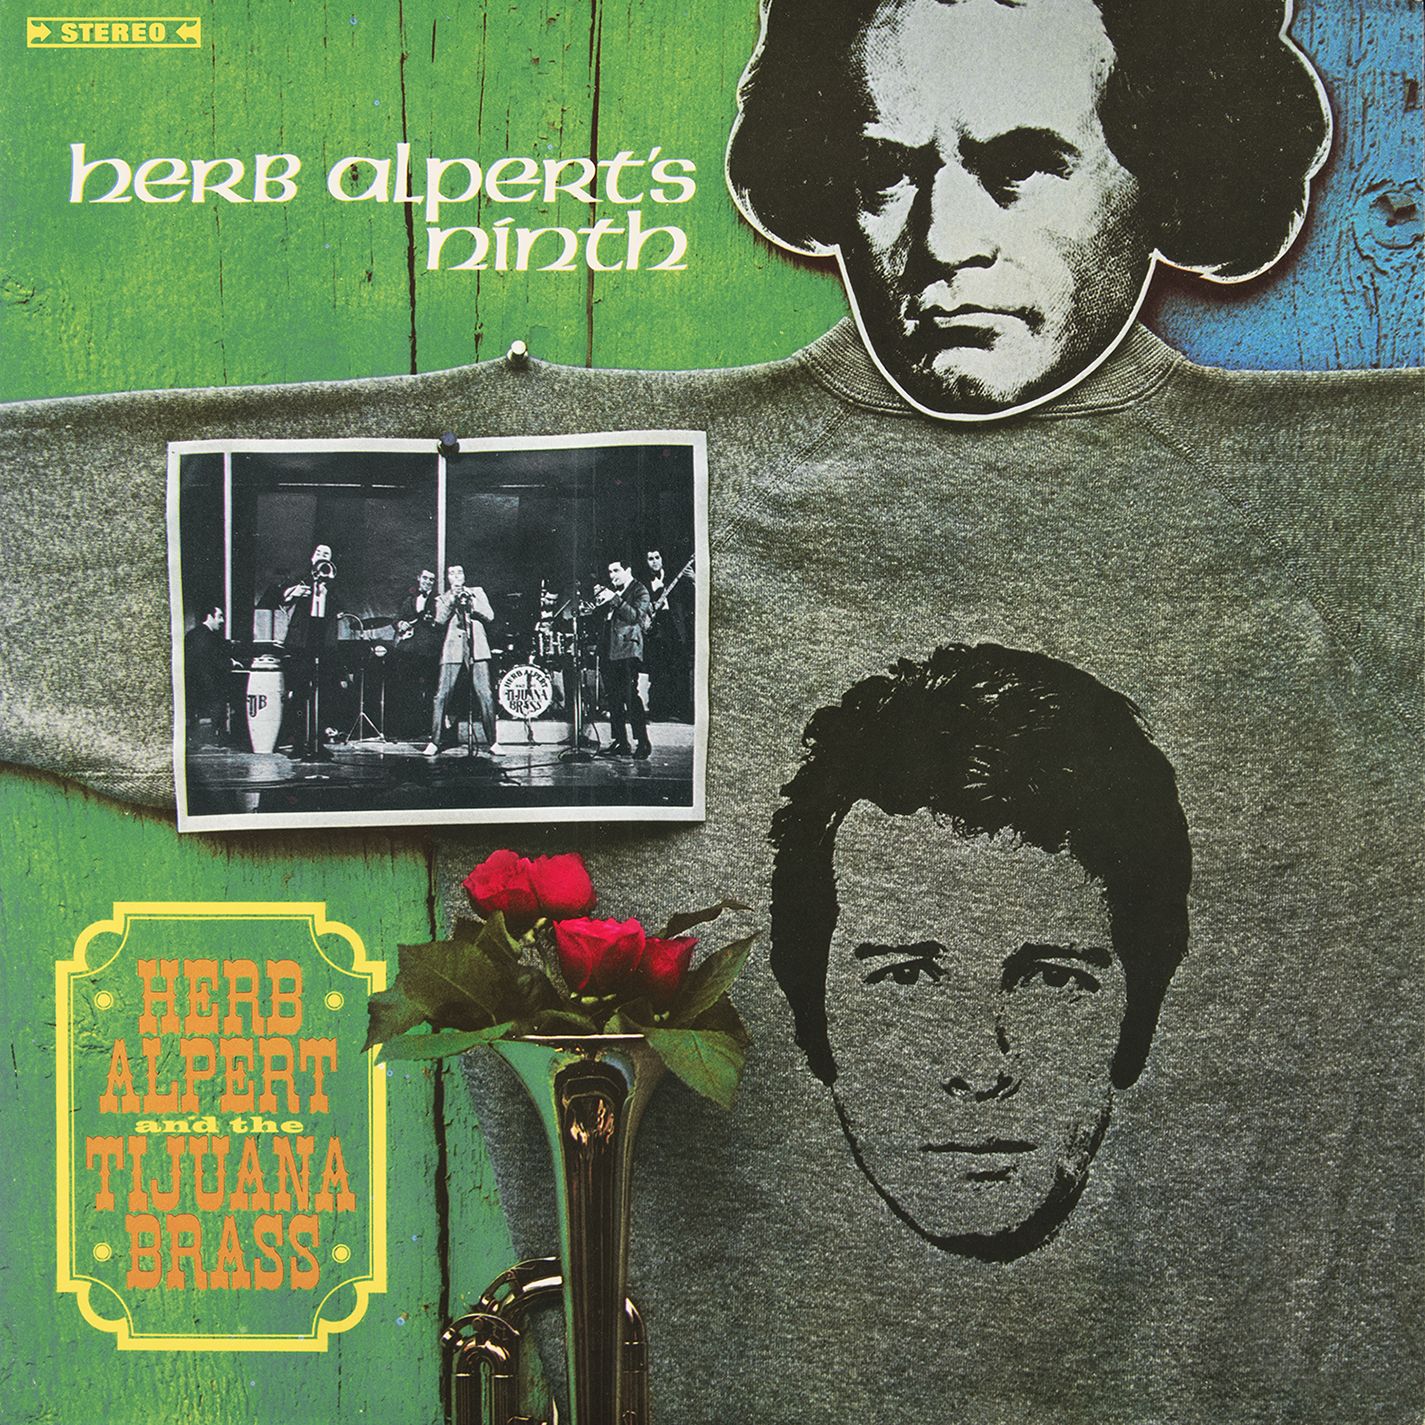 Herb Alpert & The Tijuana Brass - Herb Alpert’s Ninth (1967/2015) [AcousticSounds FLAC 24bit/88,2kHz]